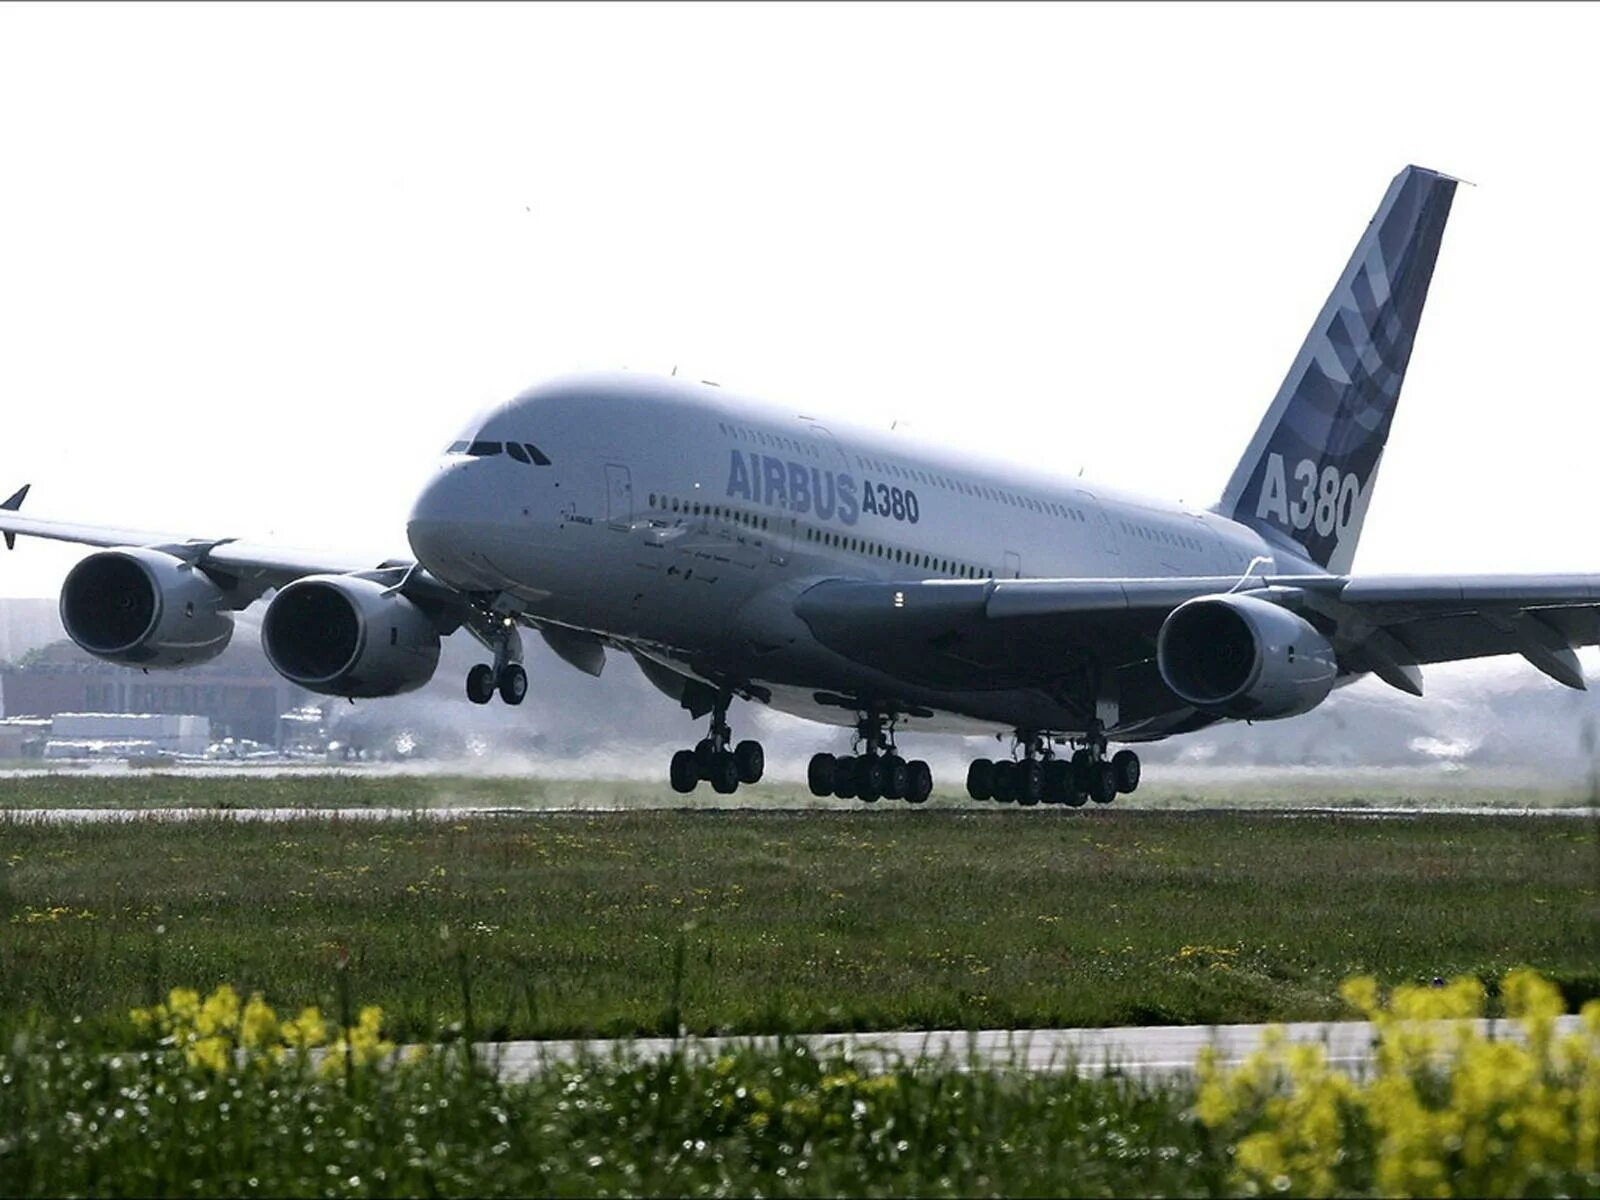 Самые большие пассажирские. Аэробус а380 грузовой. Первый полет Airbus a380. Пассажирский самолёт Аэробус а380. Boeing a380.